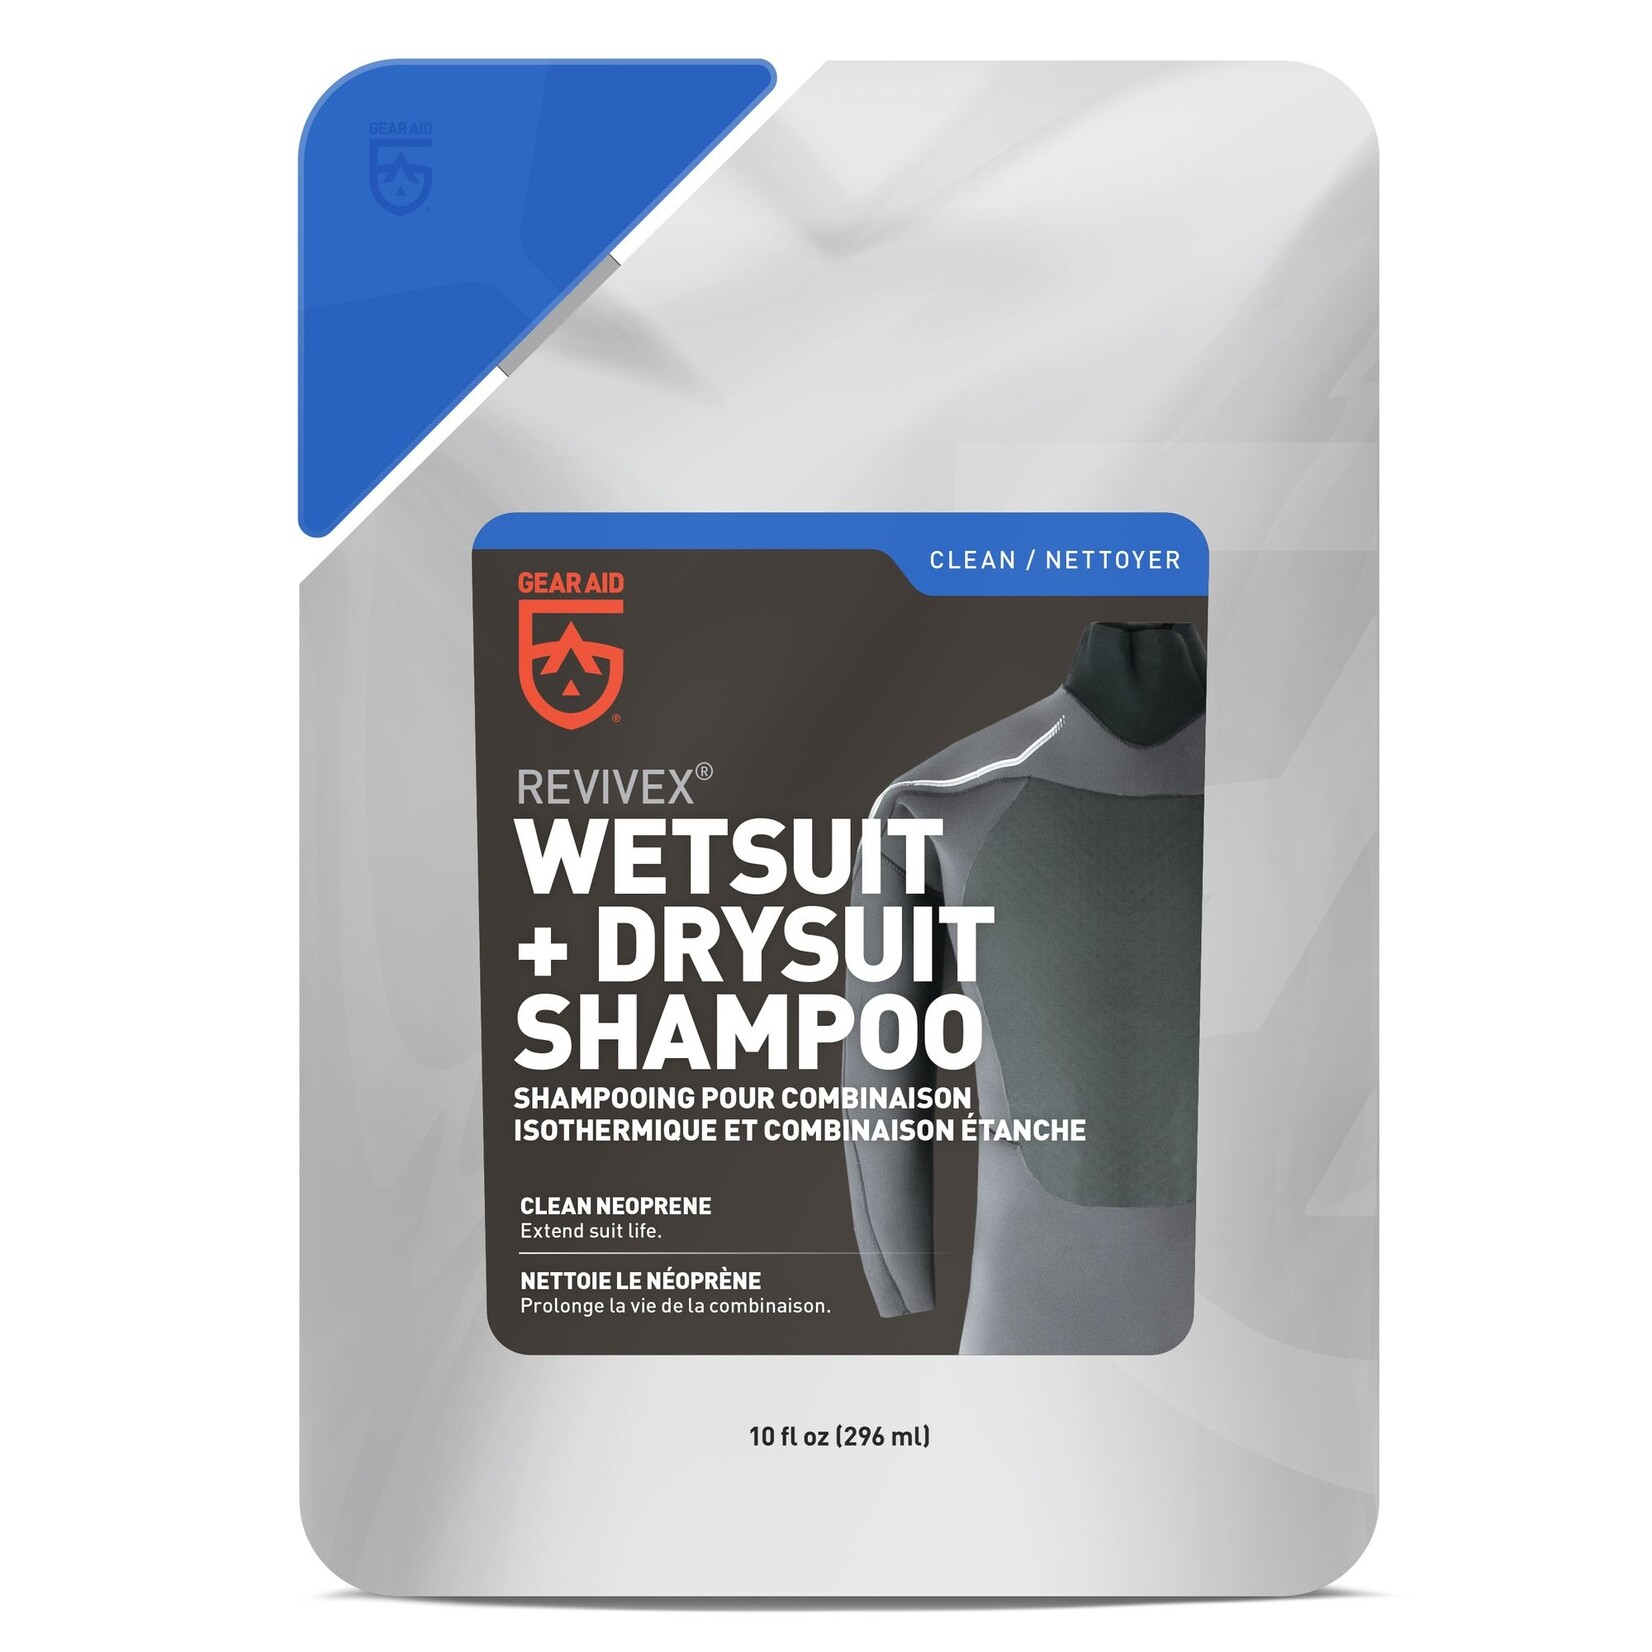 Gear Aid Revivex Wet & Drysuit Shampoo Volume: 10 oz